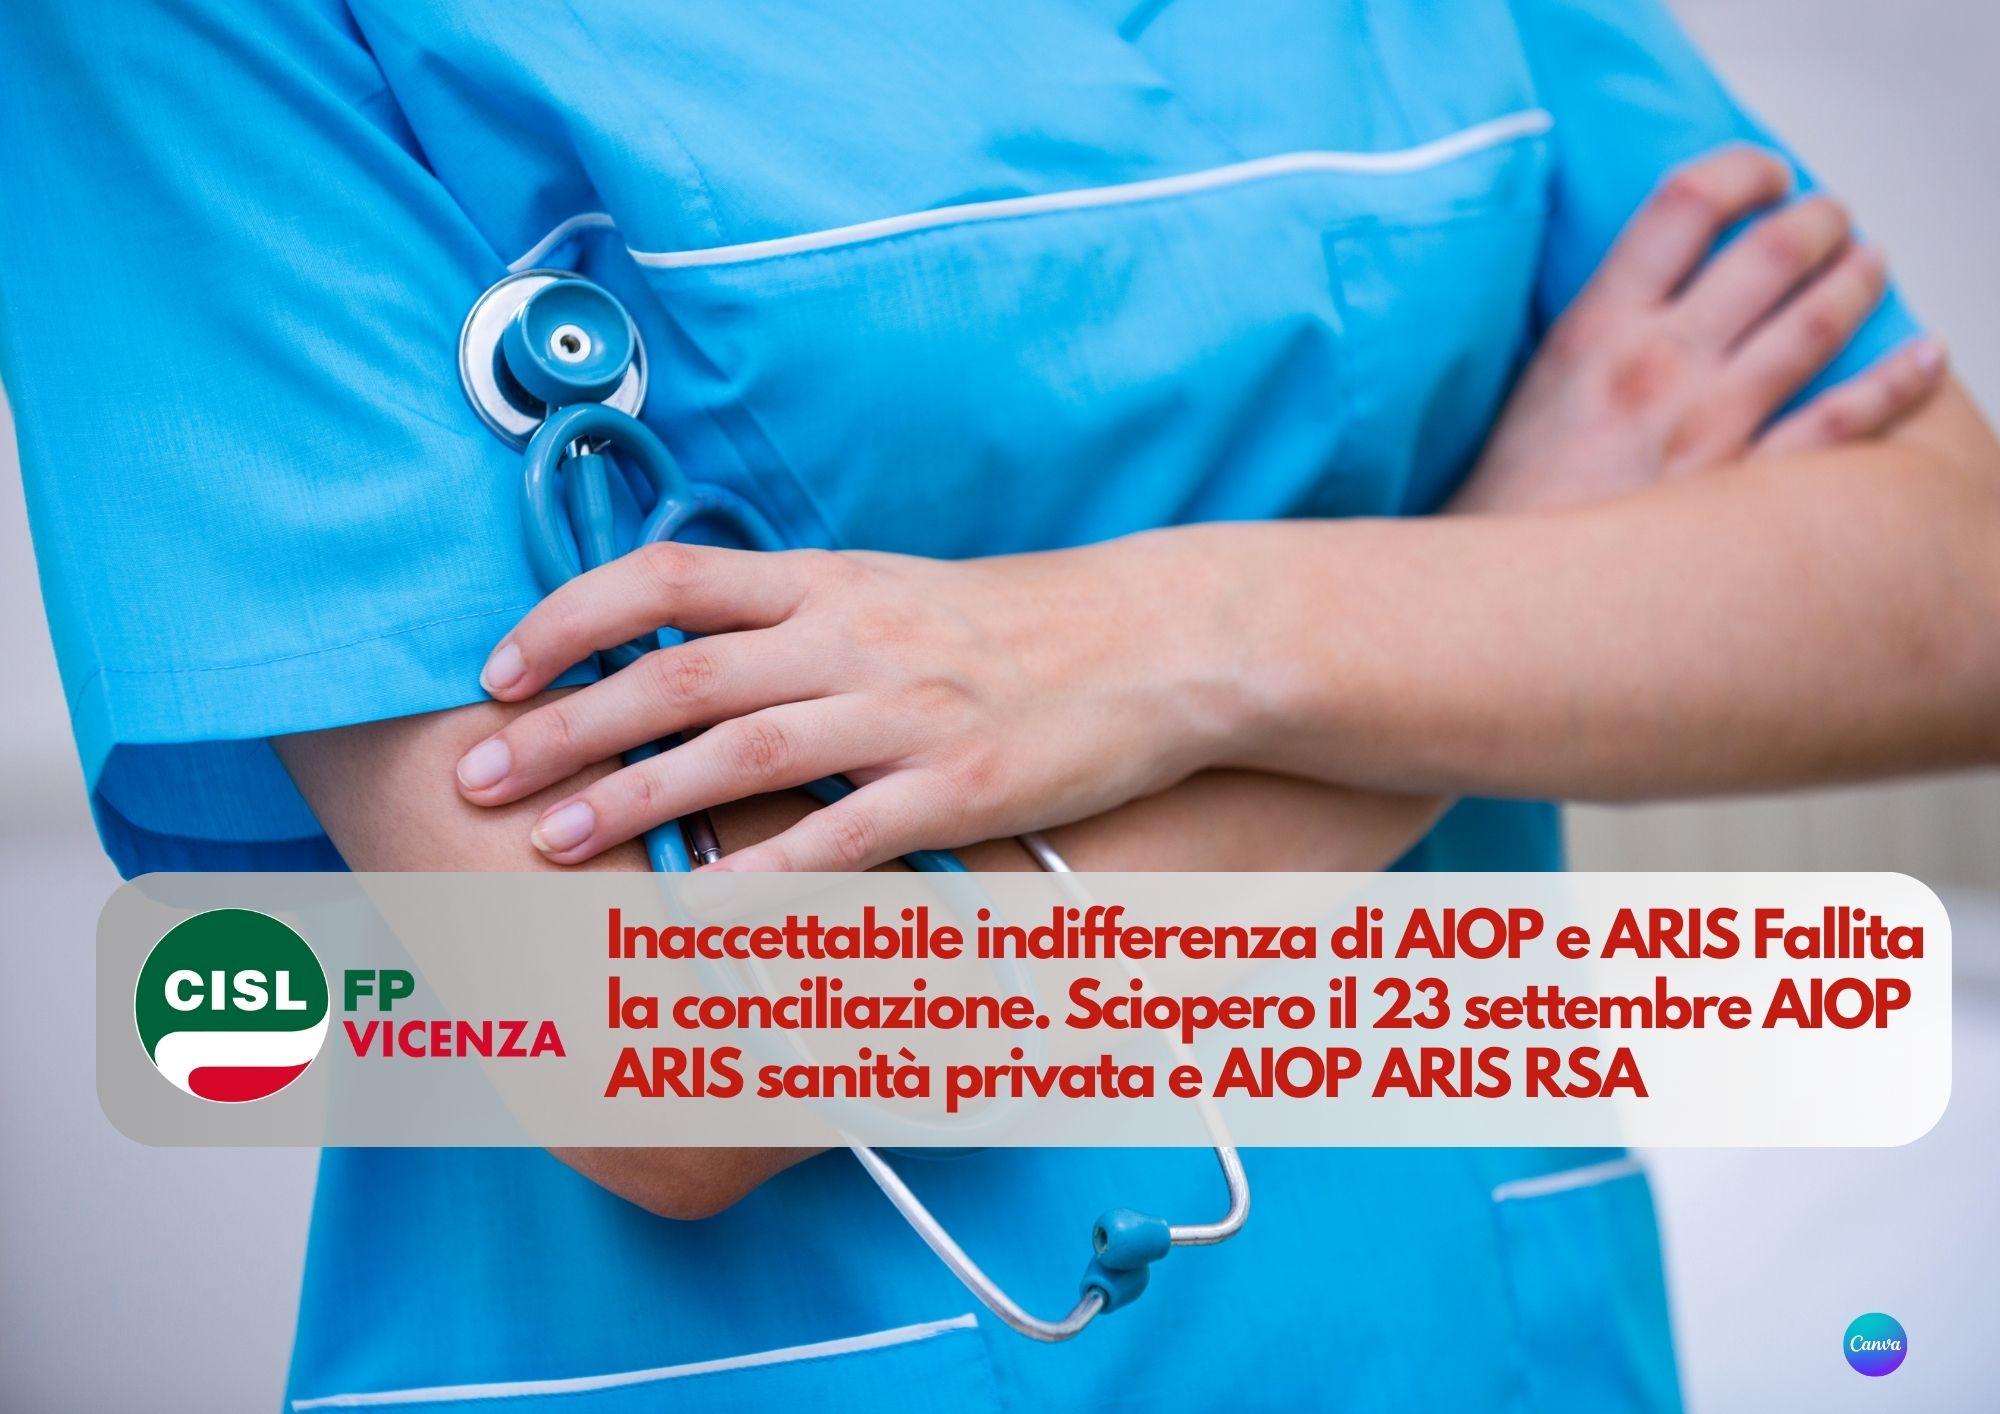 CISL FP Vicenza. Sanità privata AIOP - ARIS: fallita conciliazione. Sciopero il 23 settembre